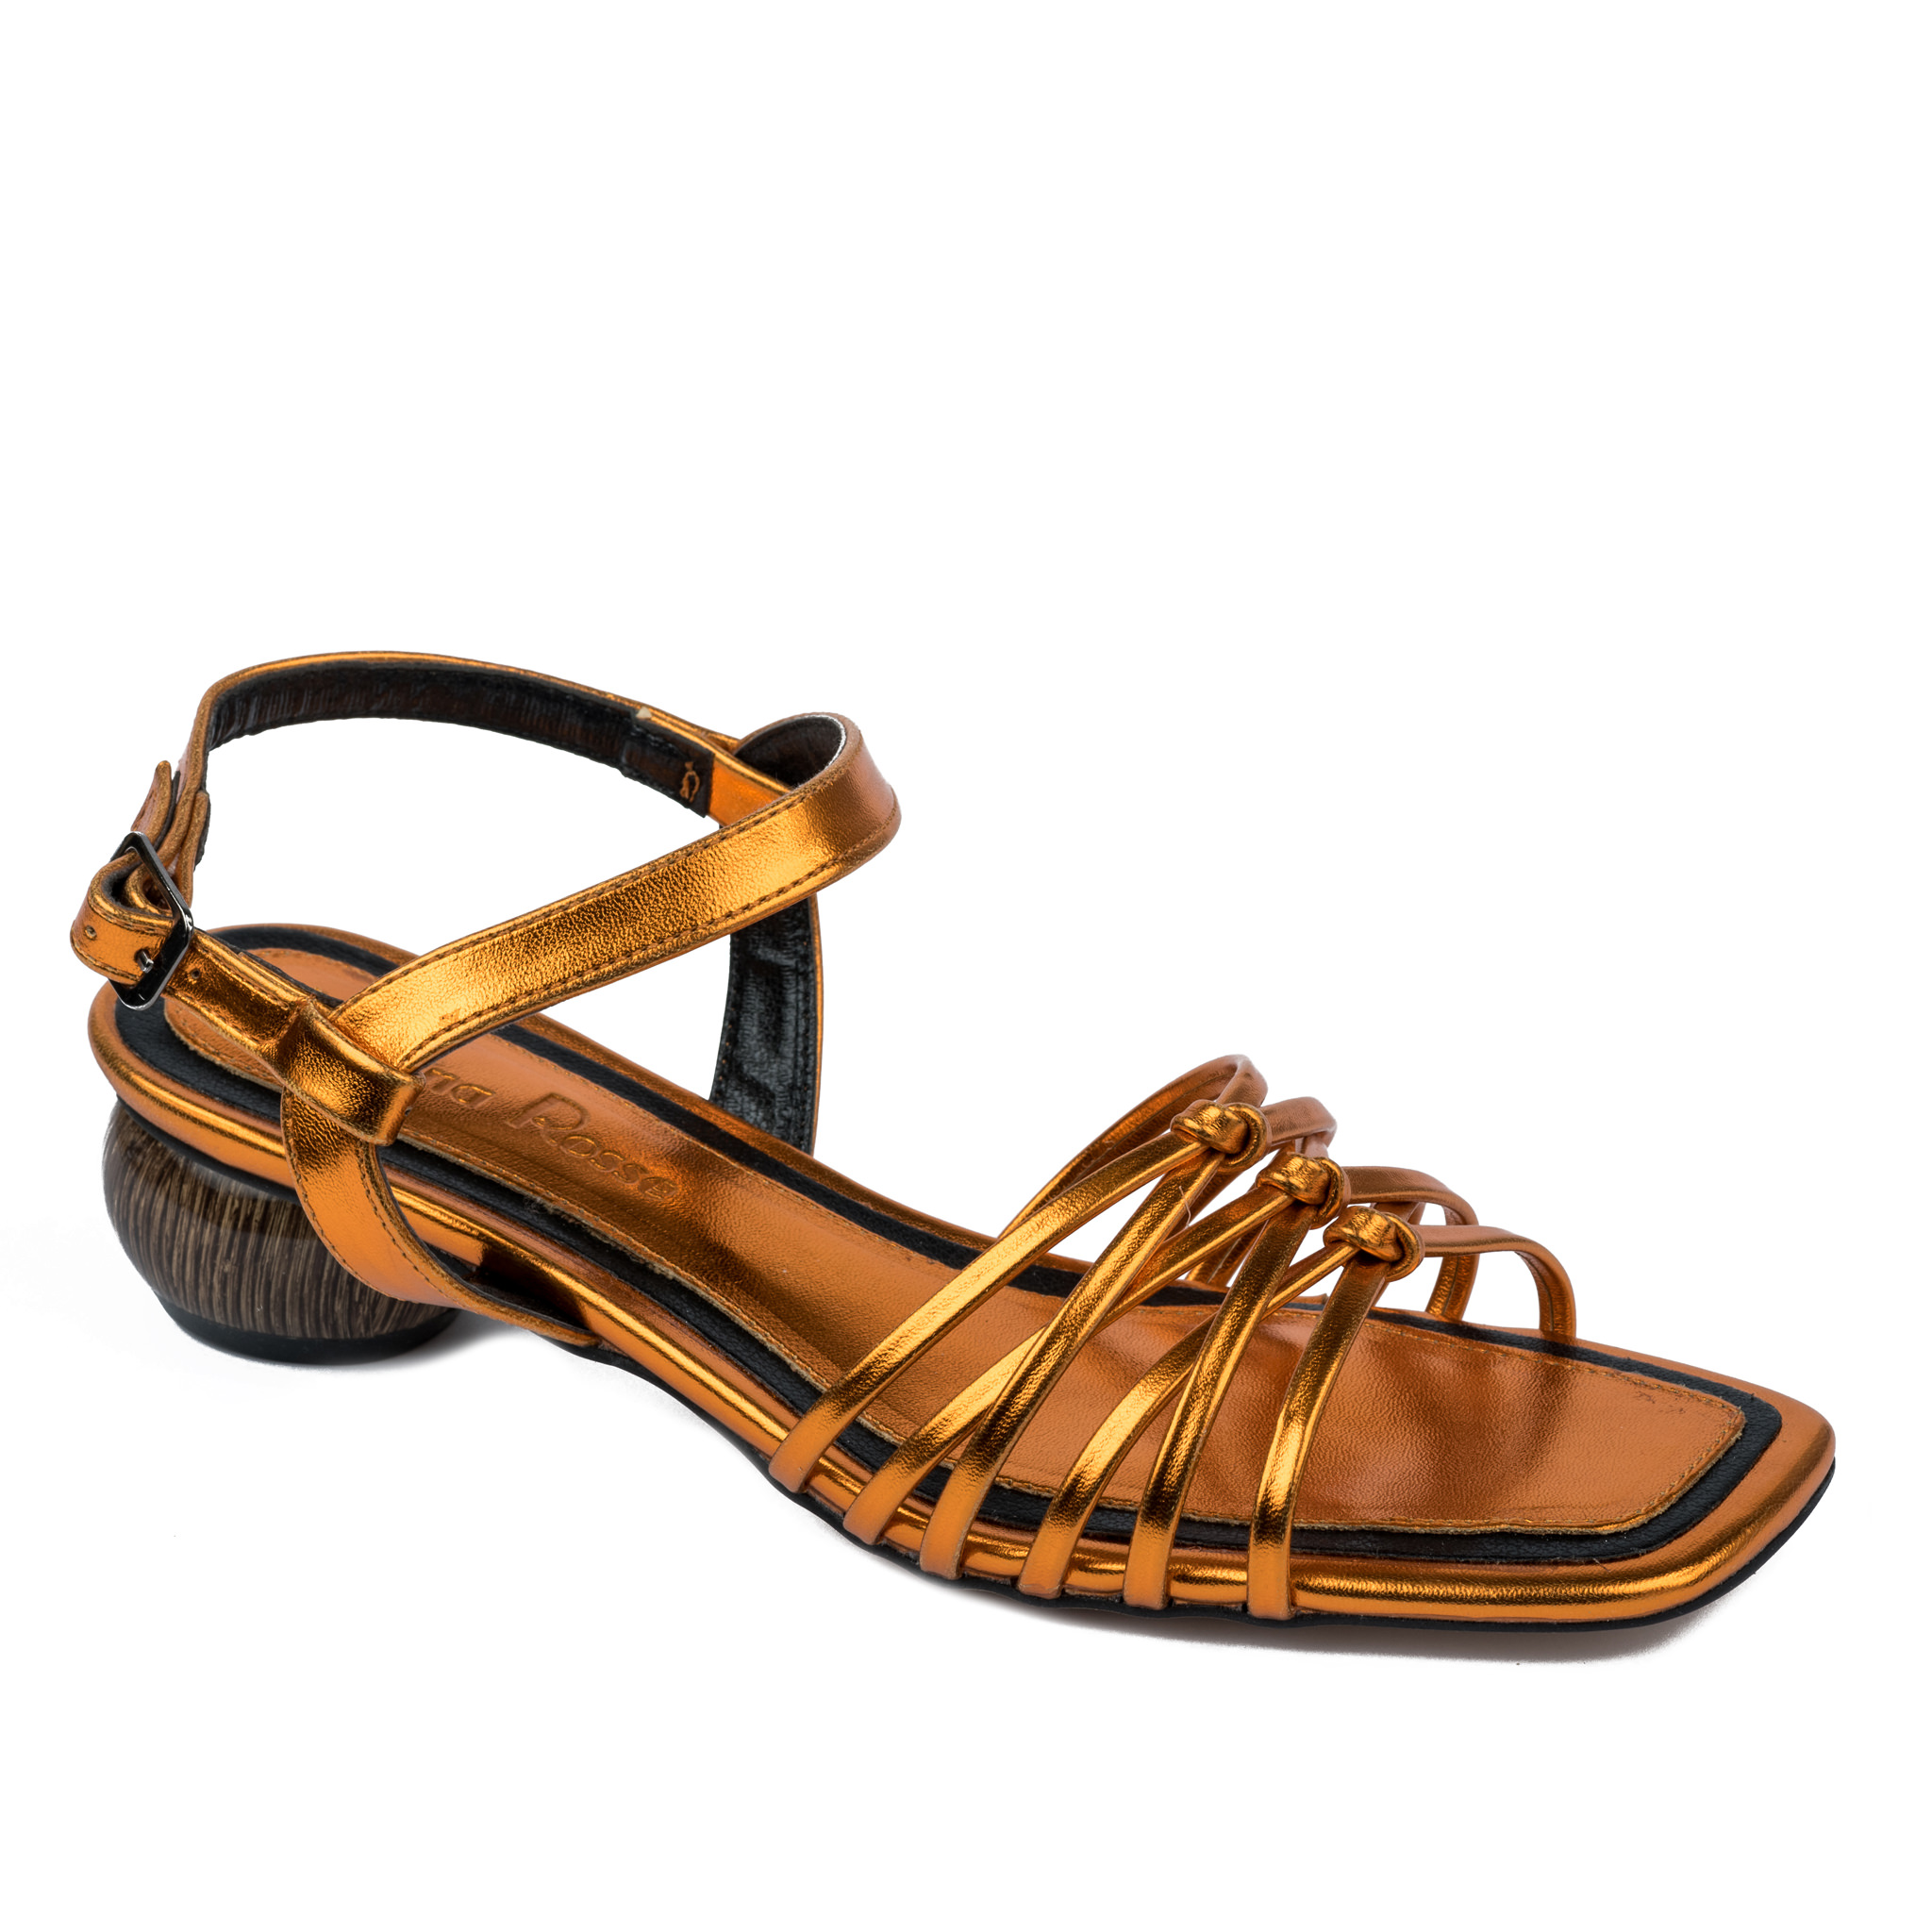 Women sandals A627 - ORANGE